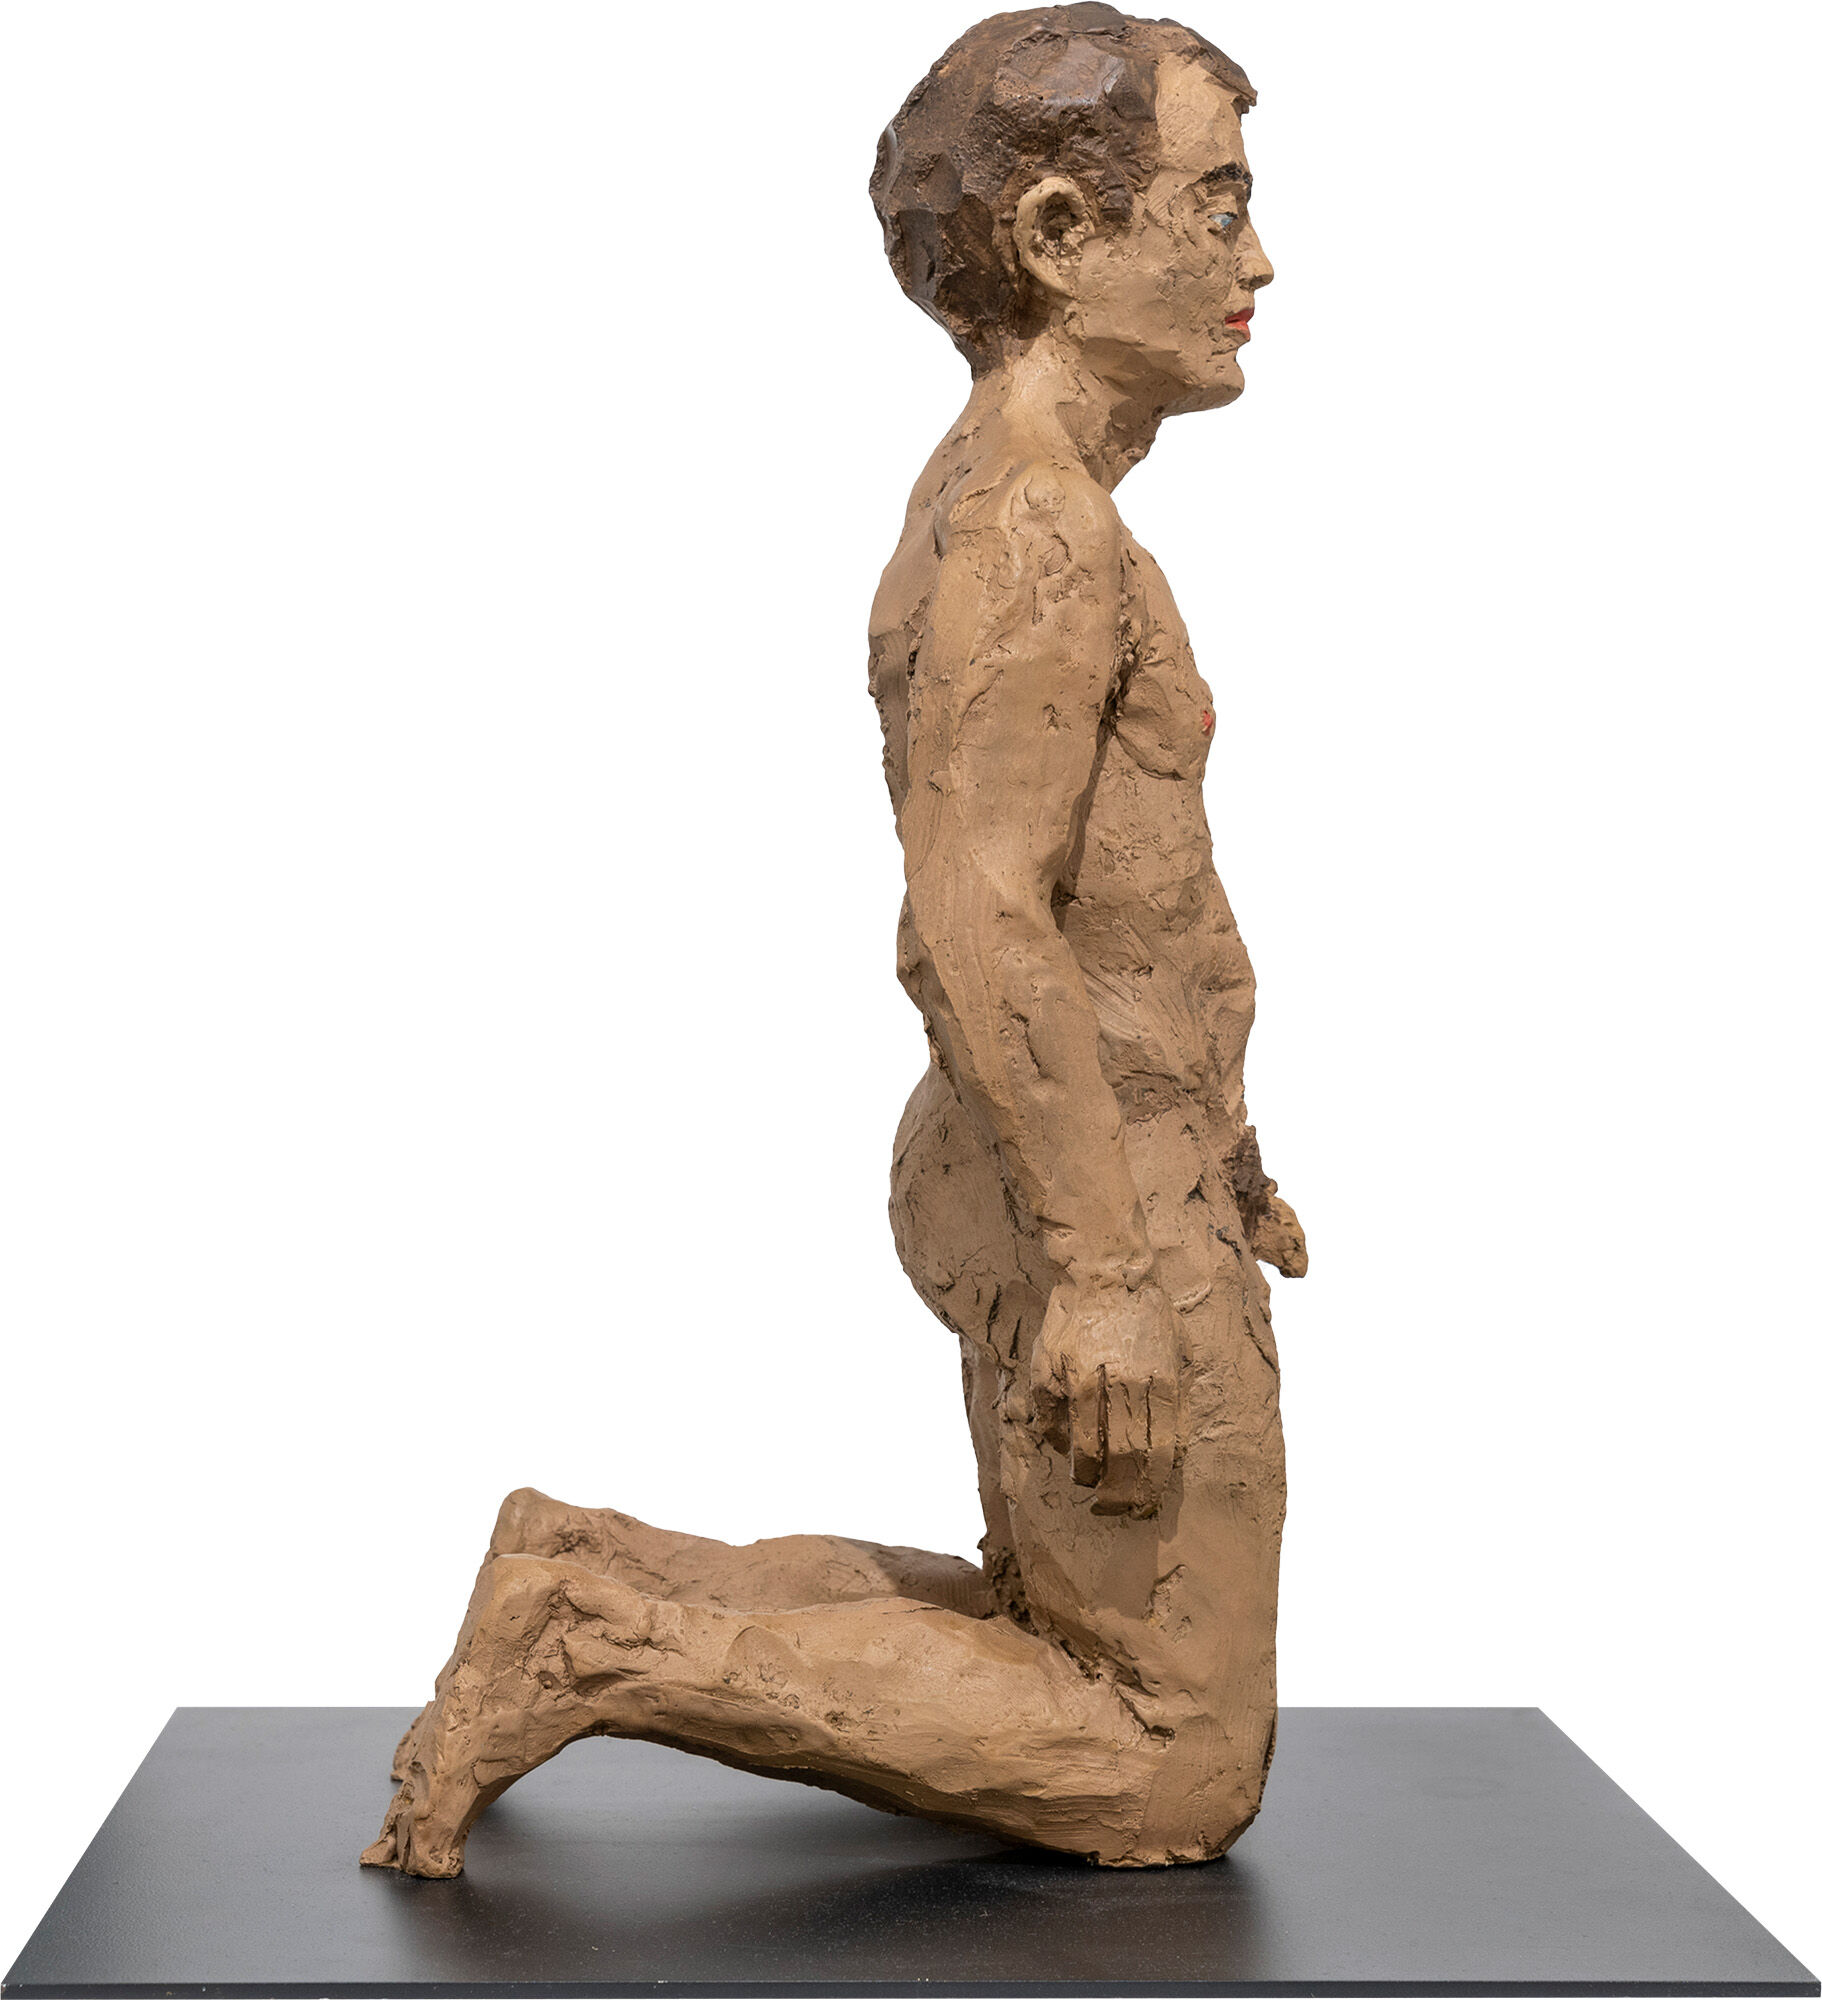 Skulptur "Kniender Mann" (2012), Bronze von Stephan Balkenhol